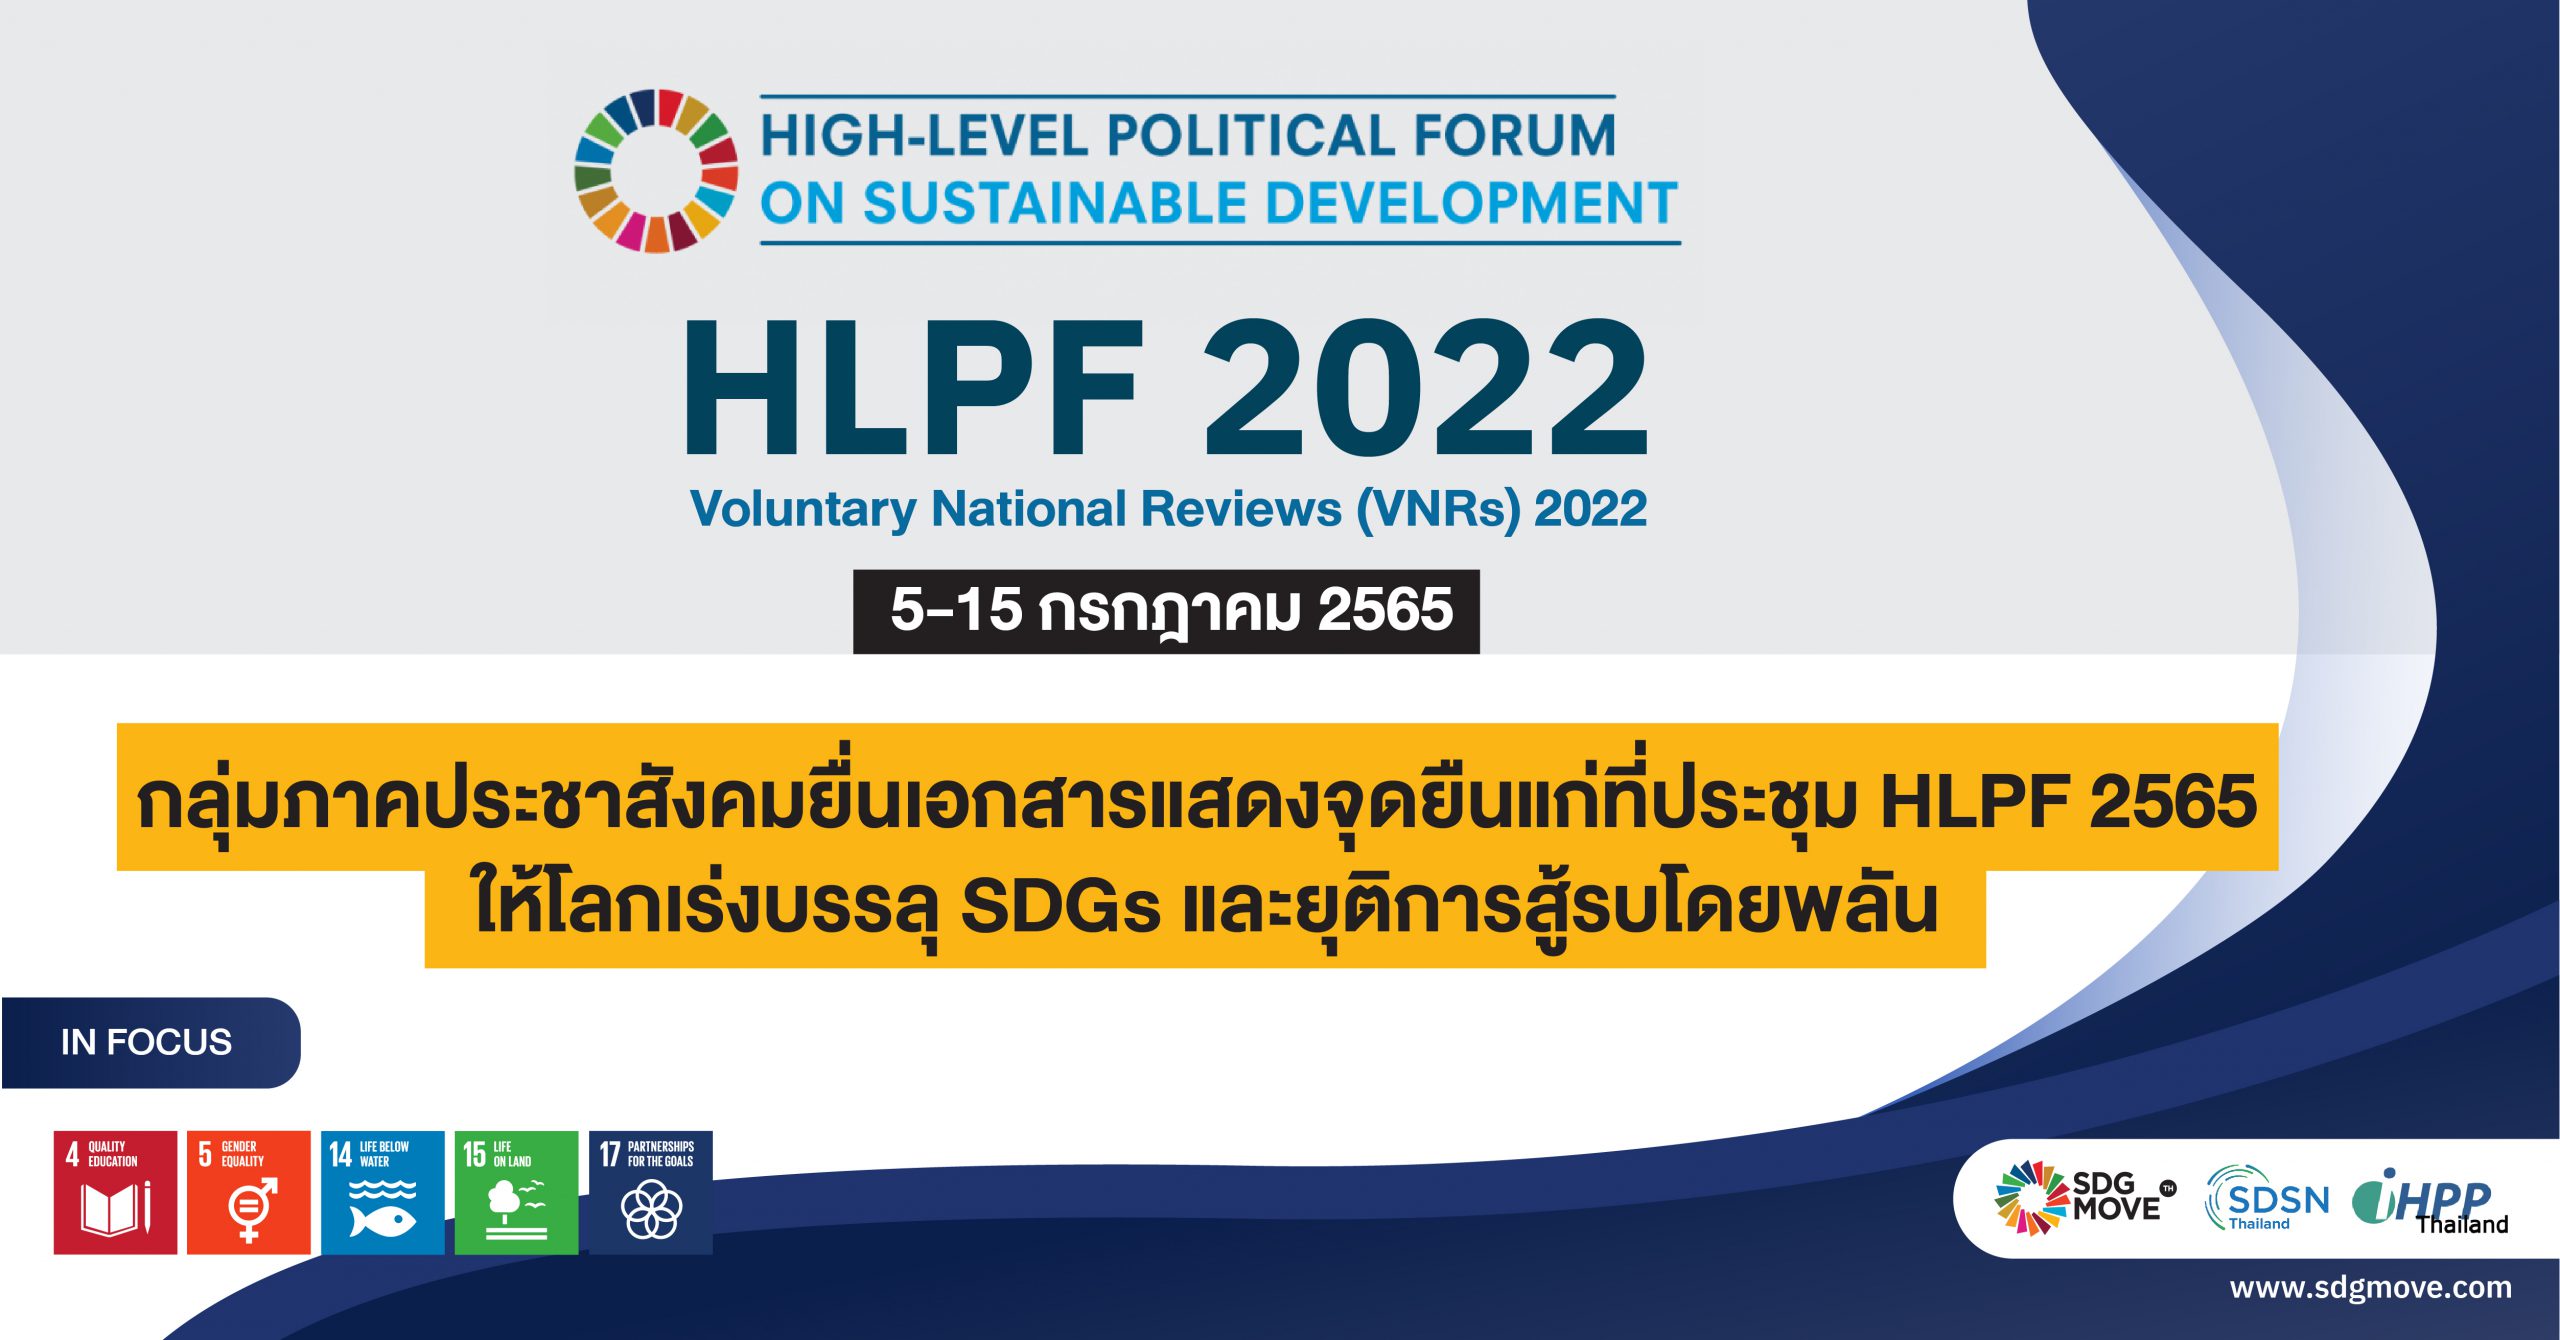 กลุ่มภาคประชาสังคมยื่นเอกสารแสดงจุดยืนแก่ที่ประชุม HLPF 2565 ให้โลกเร่งบรรลุ SDGs และยุติการสู้รบโดยพลัน